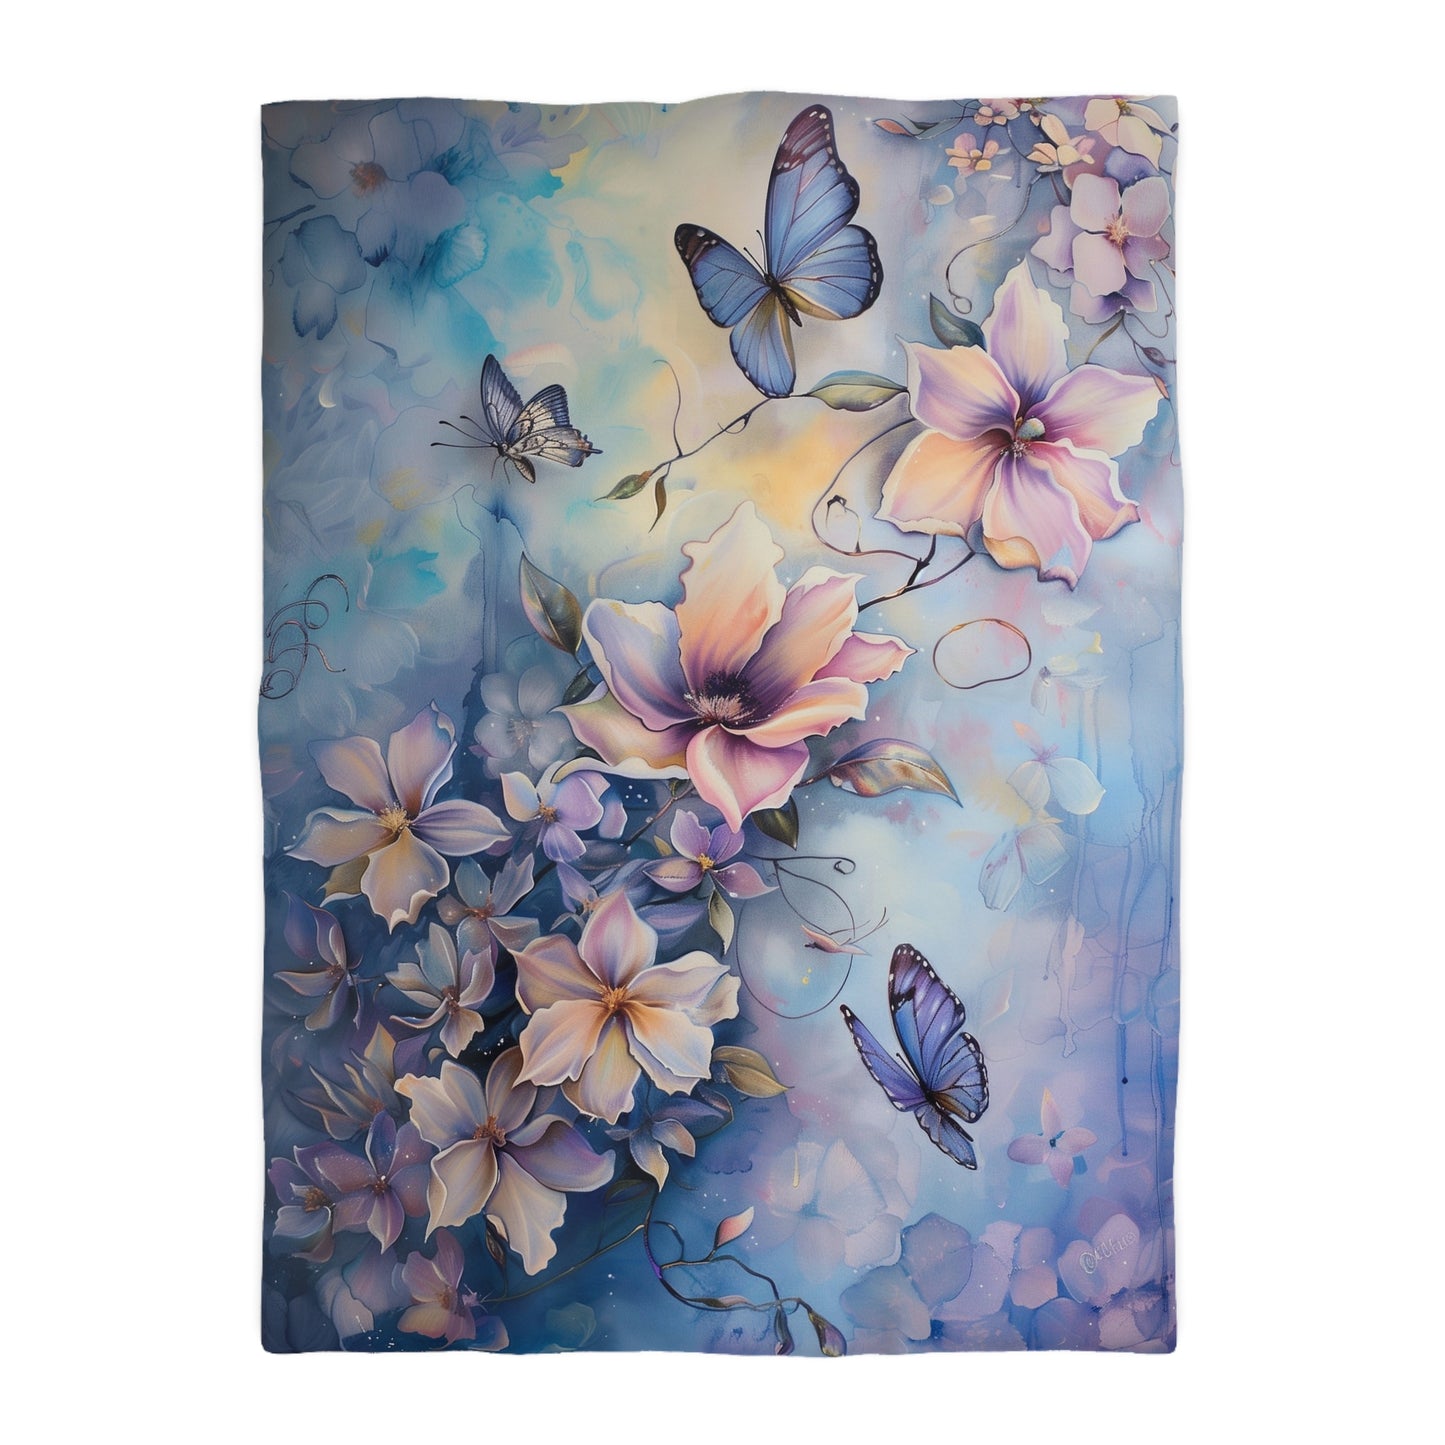 Girls flowers and butterflies Microfiber Duvet Cover